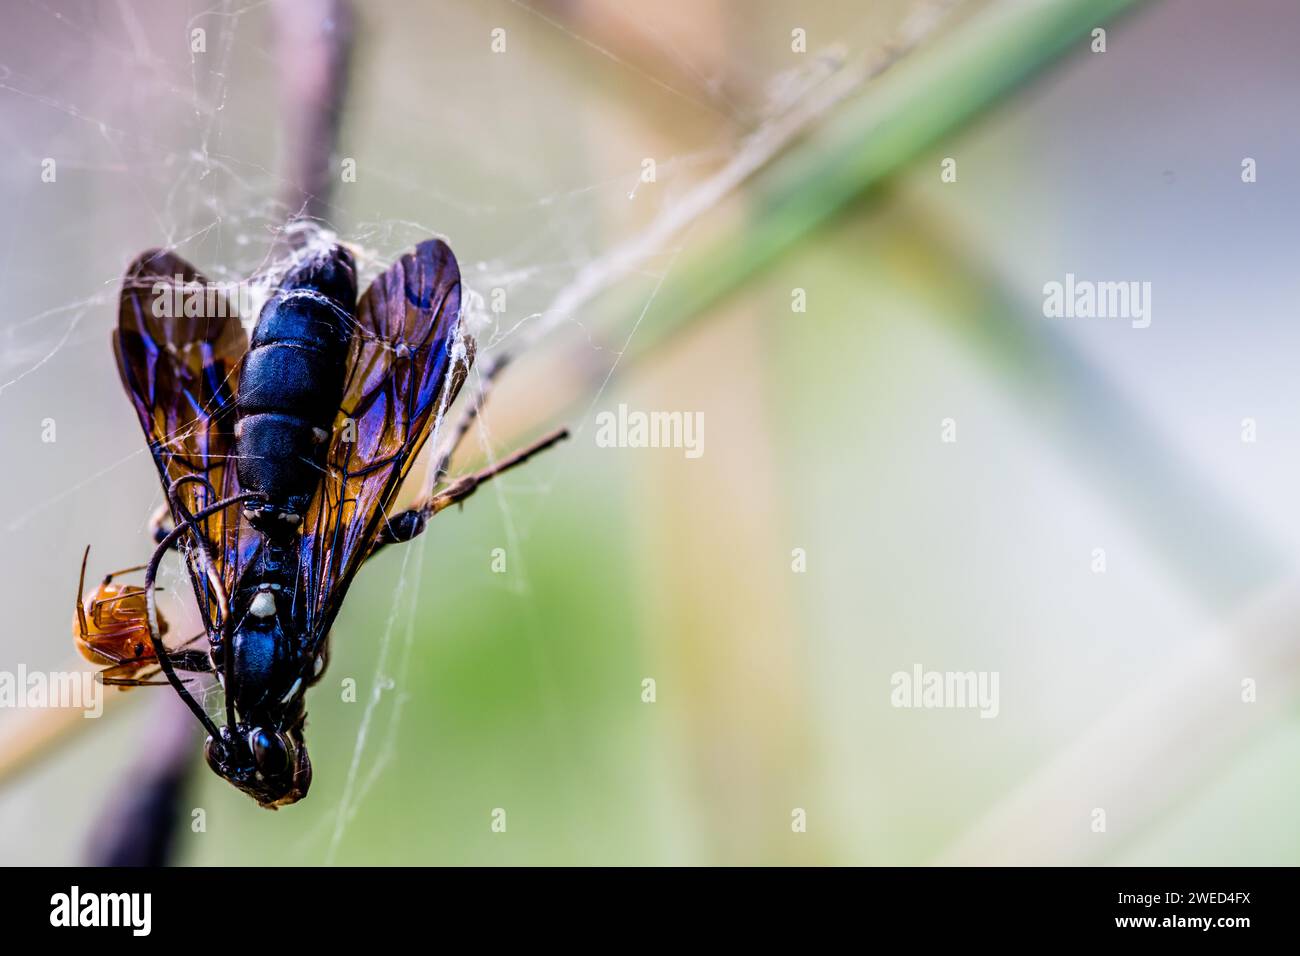 Die Spinne greift schwarzes geflügeltes Insekt an, das sich vor weichem Hintergrund in ihrem Netz gefangen hat Stockfoto